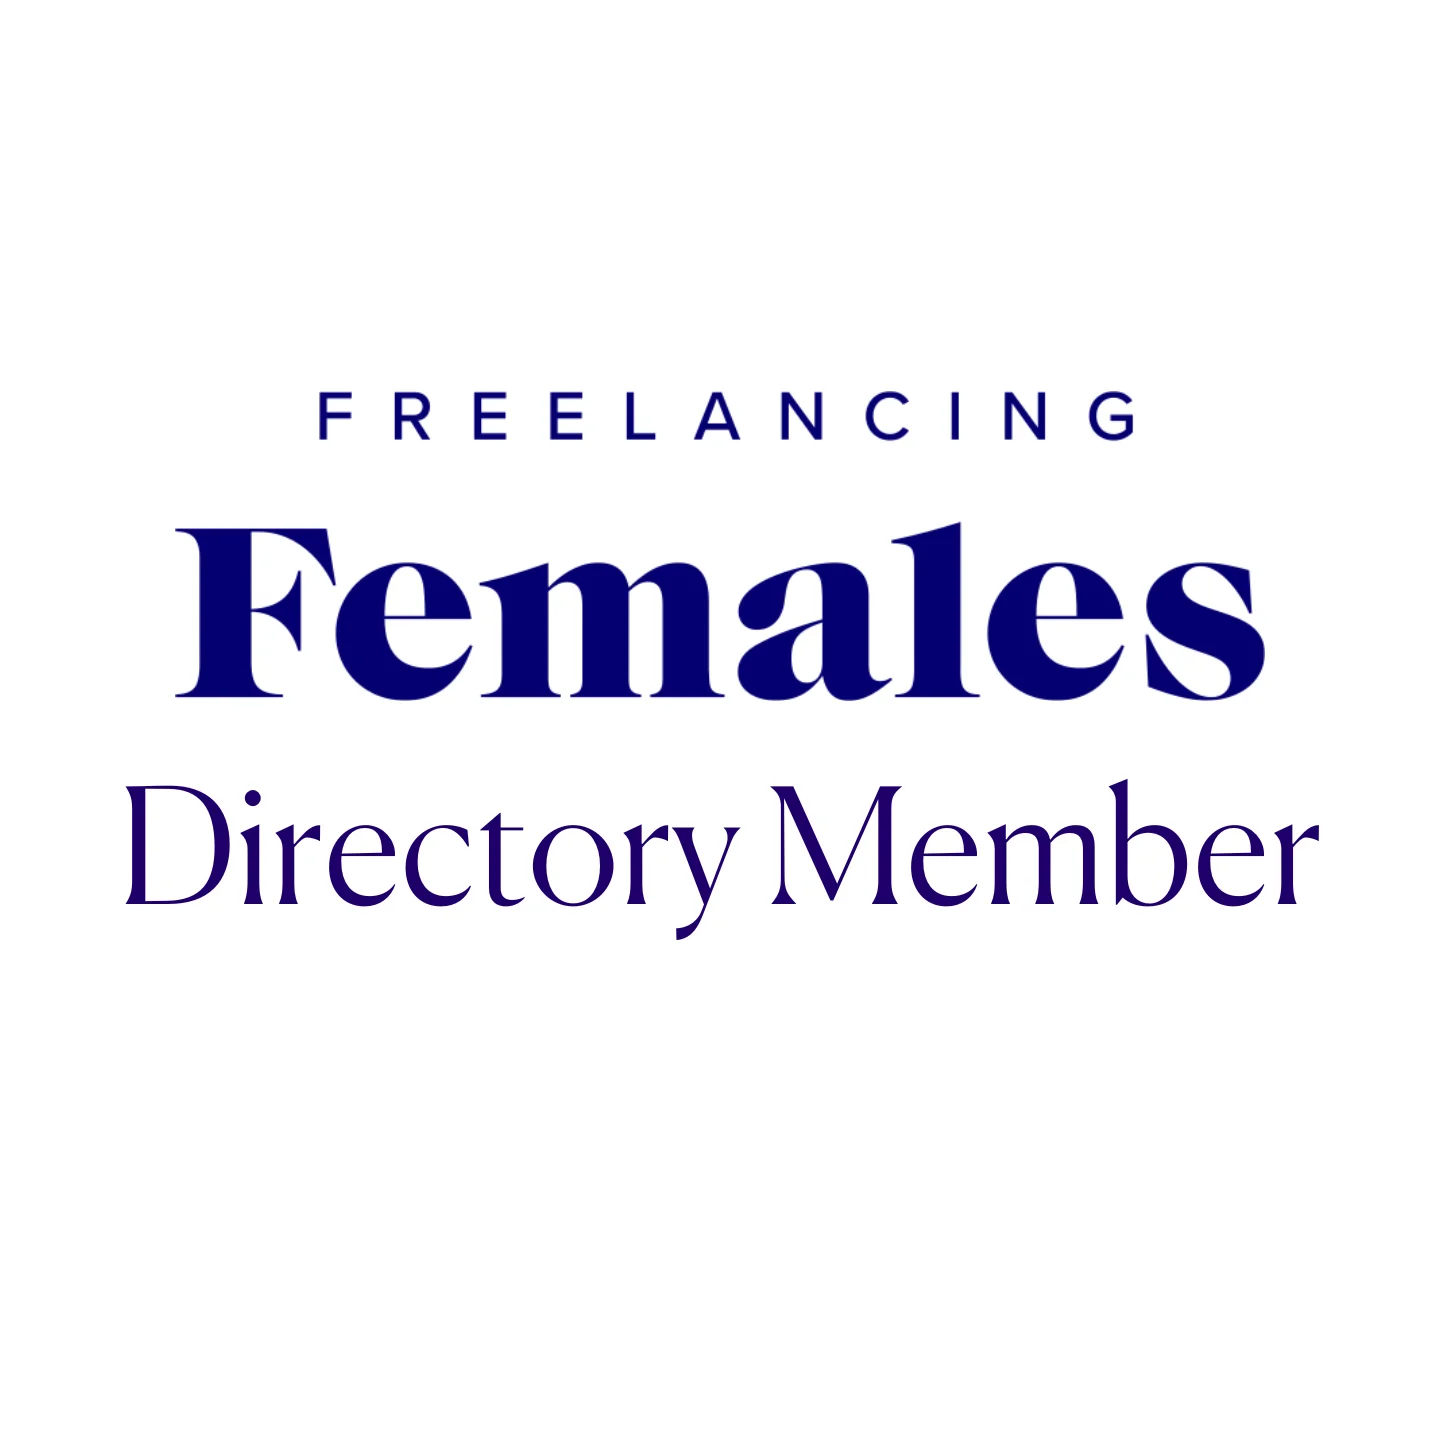 Freelancing Females Directory Member